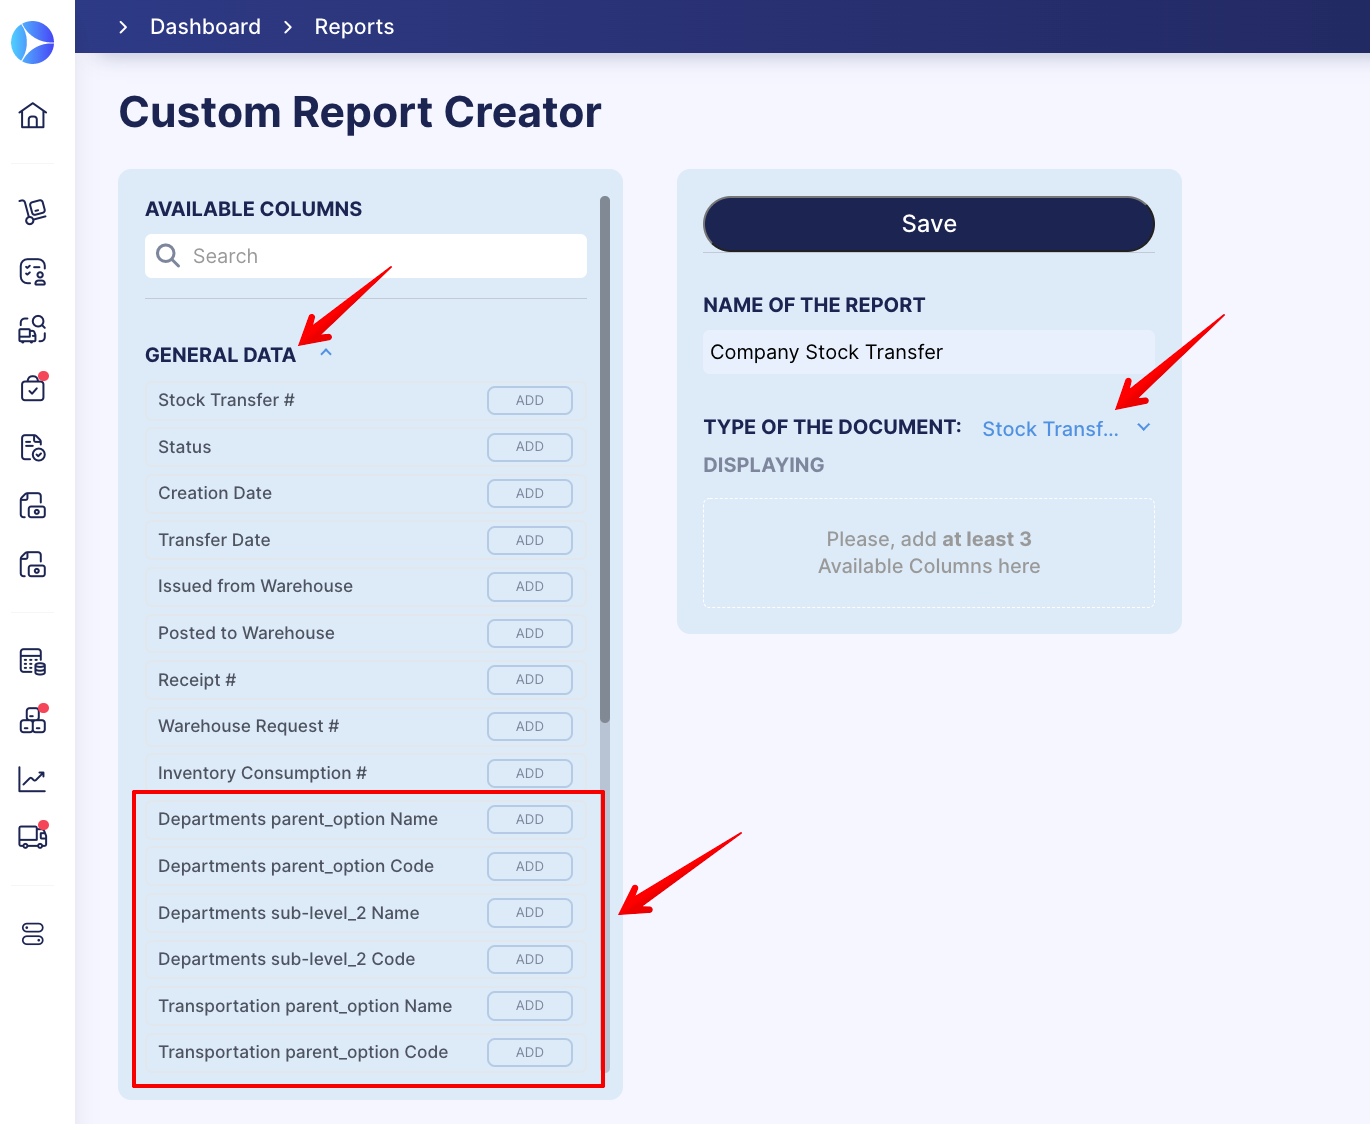 Custom Report Creator – general data